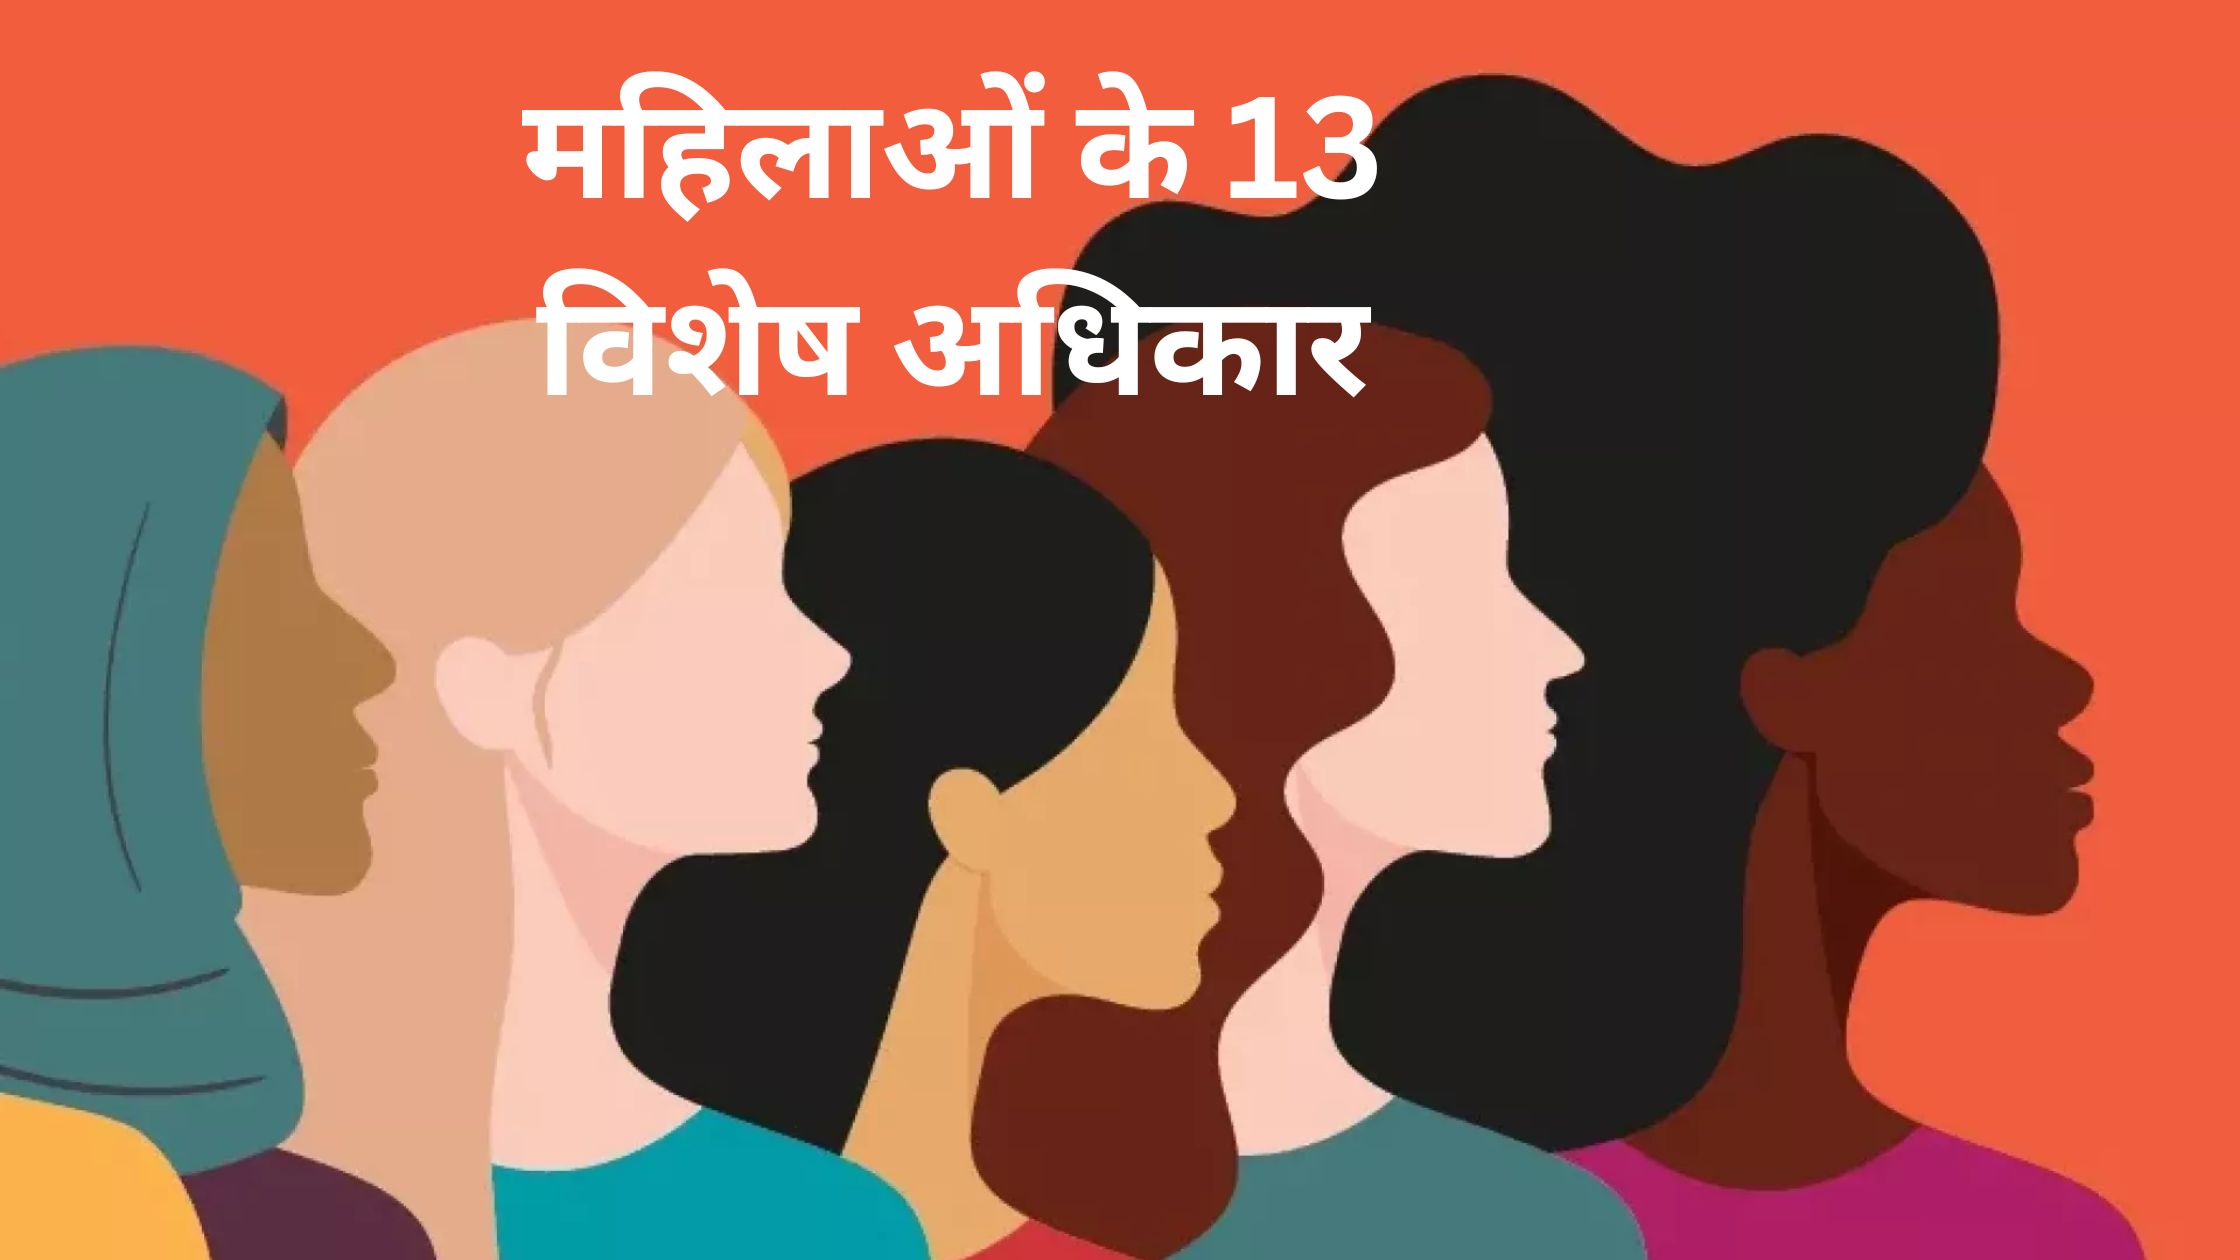 महिलाओं के 13 विशेष अधिकार जो हर महिला को जरूर पता होना चाहिए!!